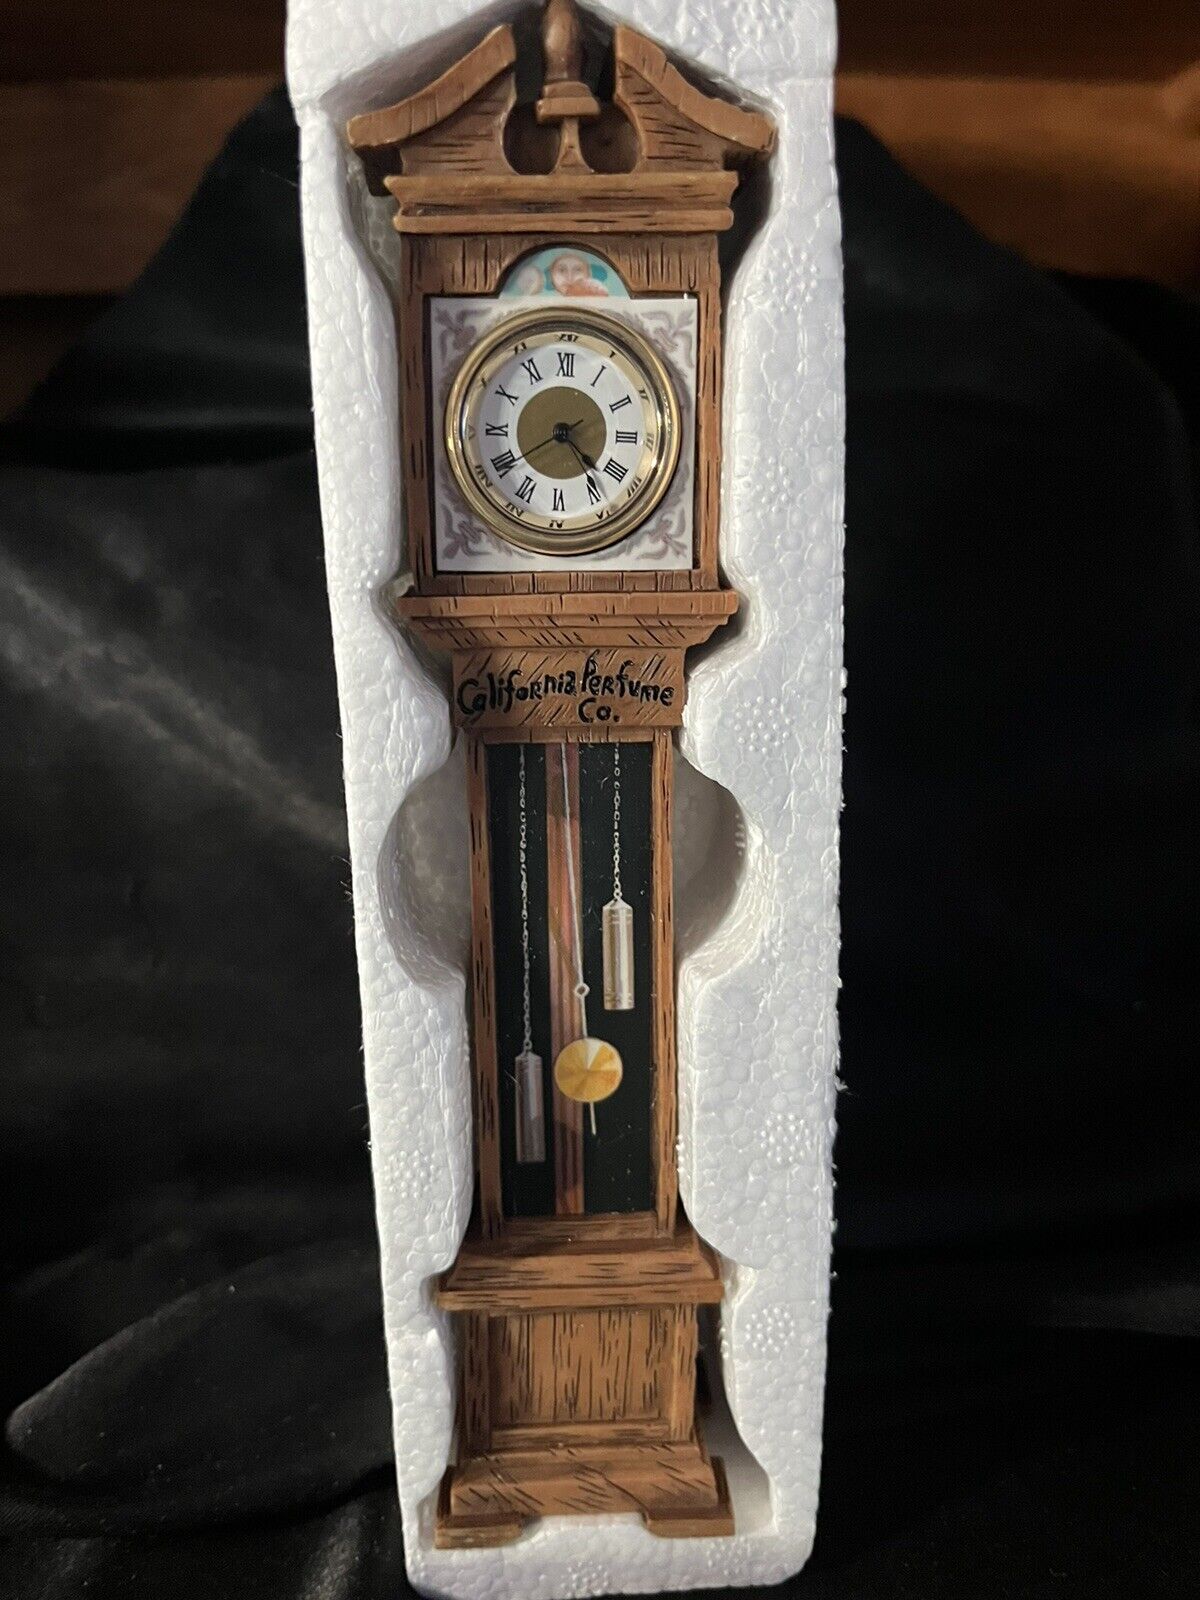 AVON Grandfather Clock California Perfume Co 10” in box